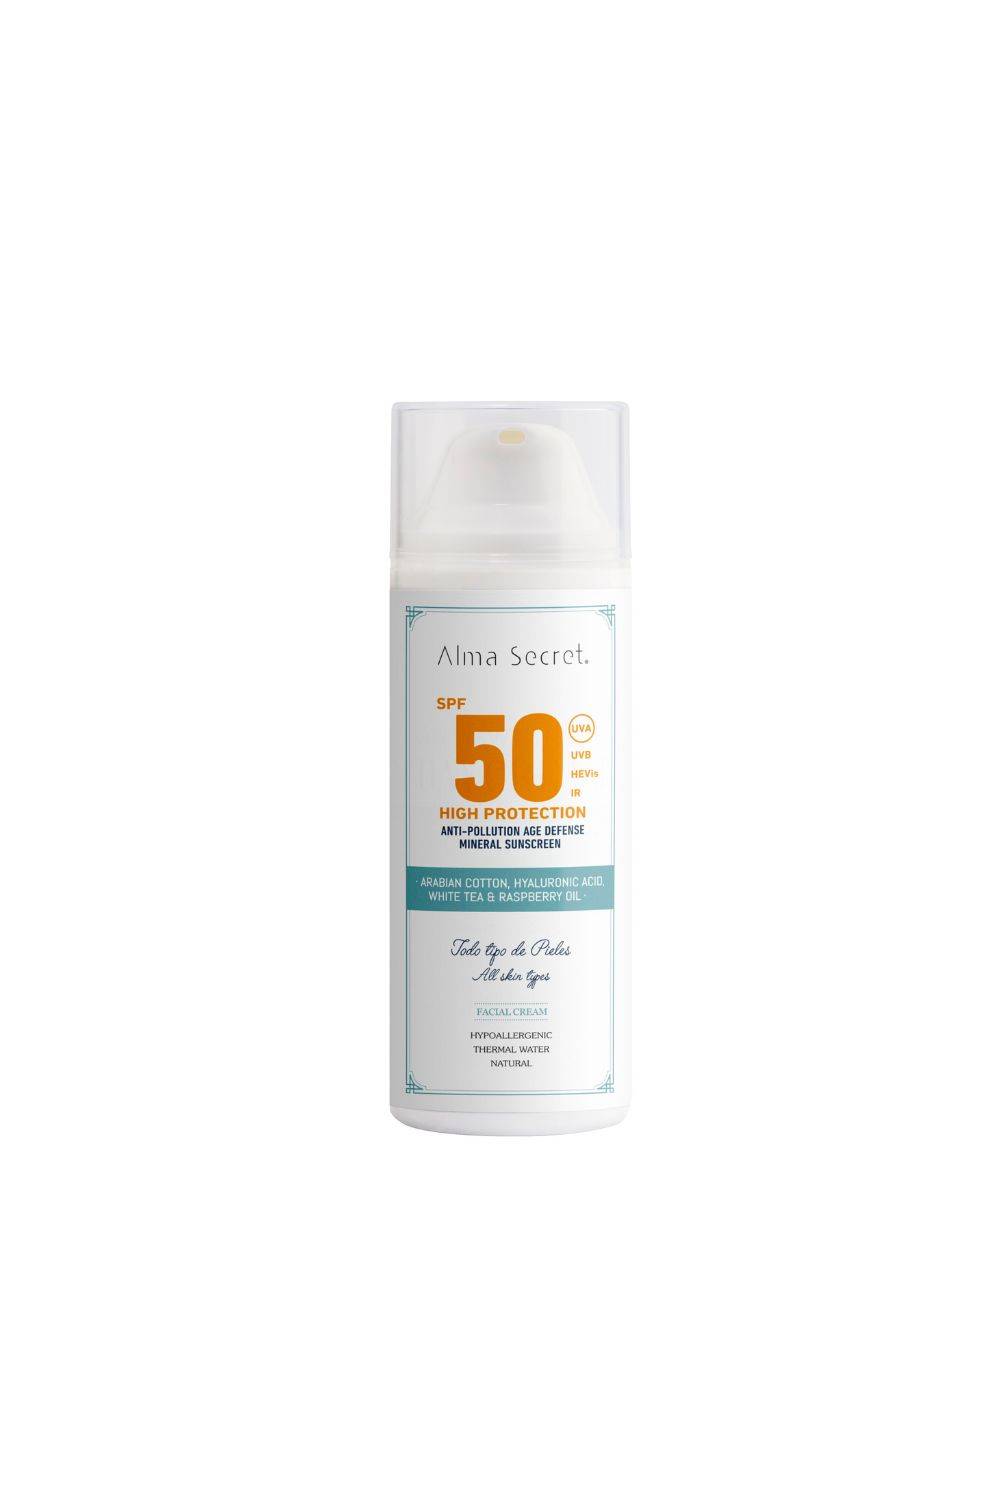 Alma Secret Crema Solar Facial SPF50+ 50 ml